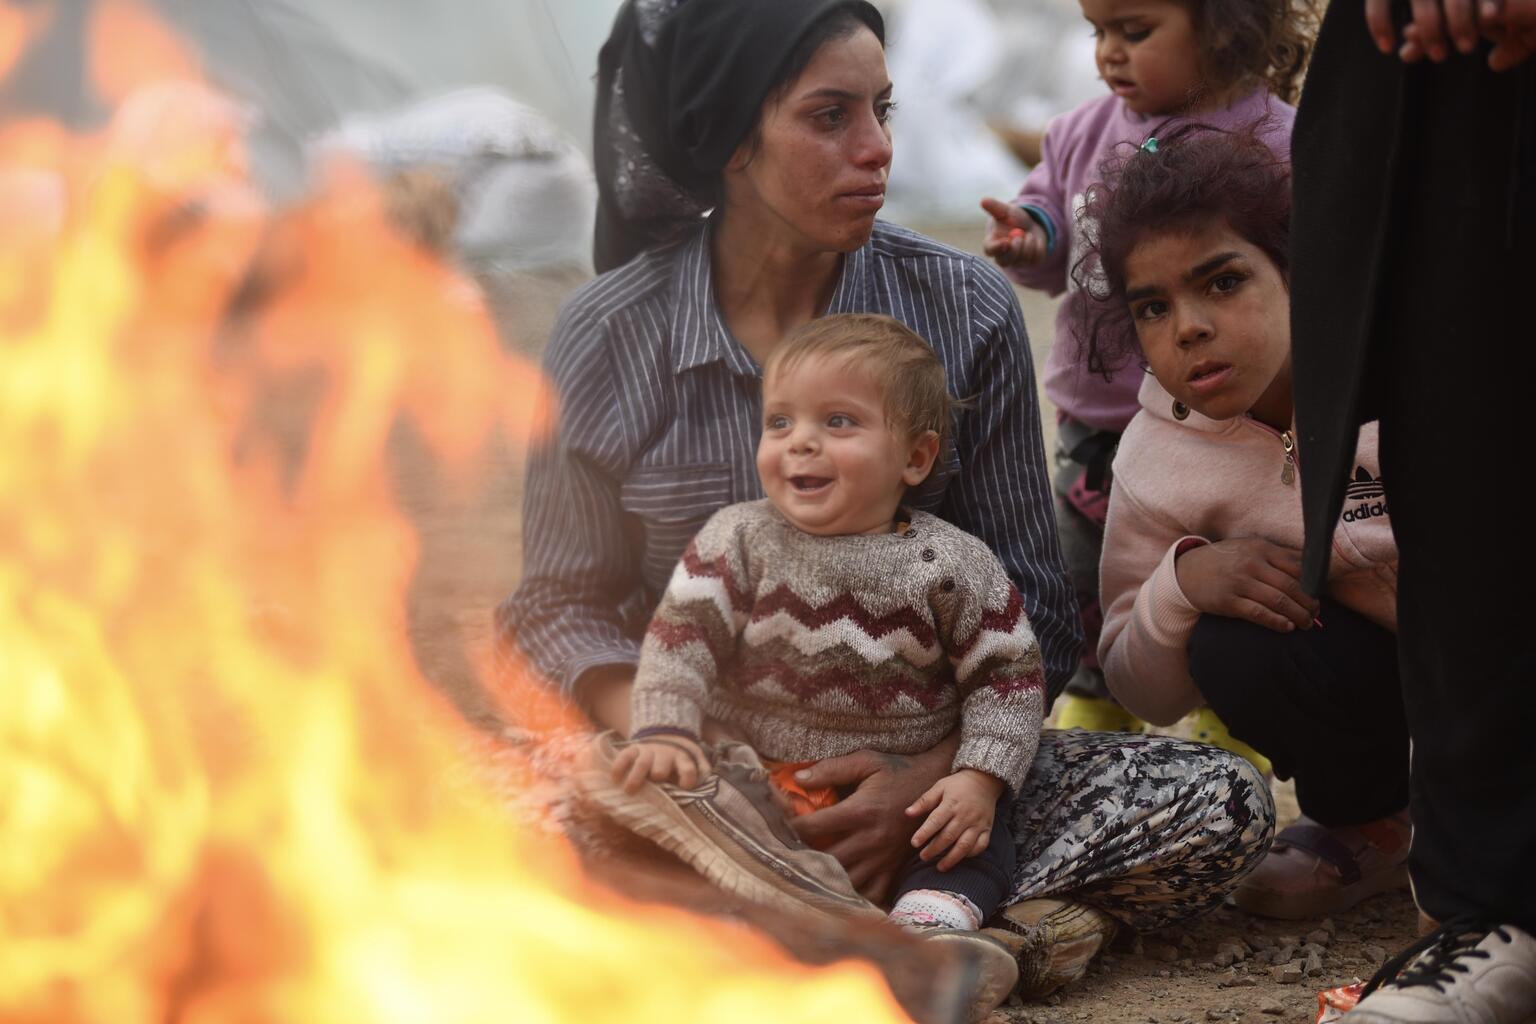 Družina iz Turčije se greje ob ognju pred šotori, v začasnem taborišču, kjer so nastanjene žrtve potresov. © UNICEF/UN0780742/Ölçer